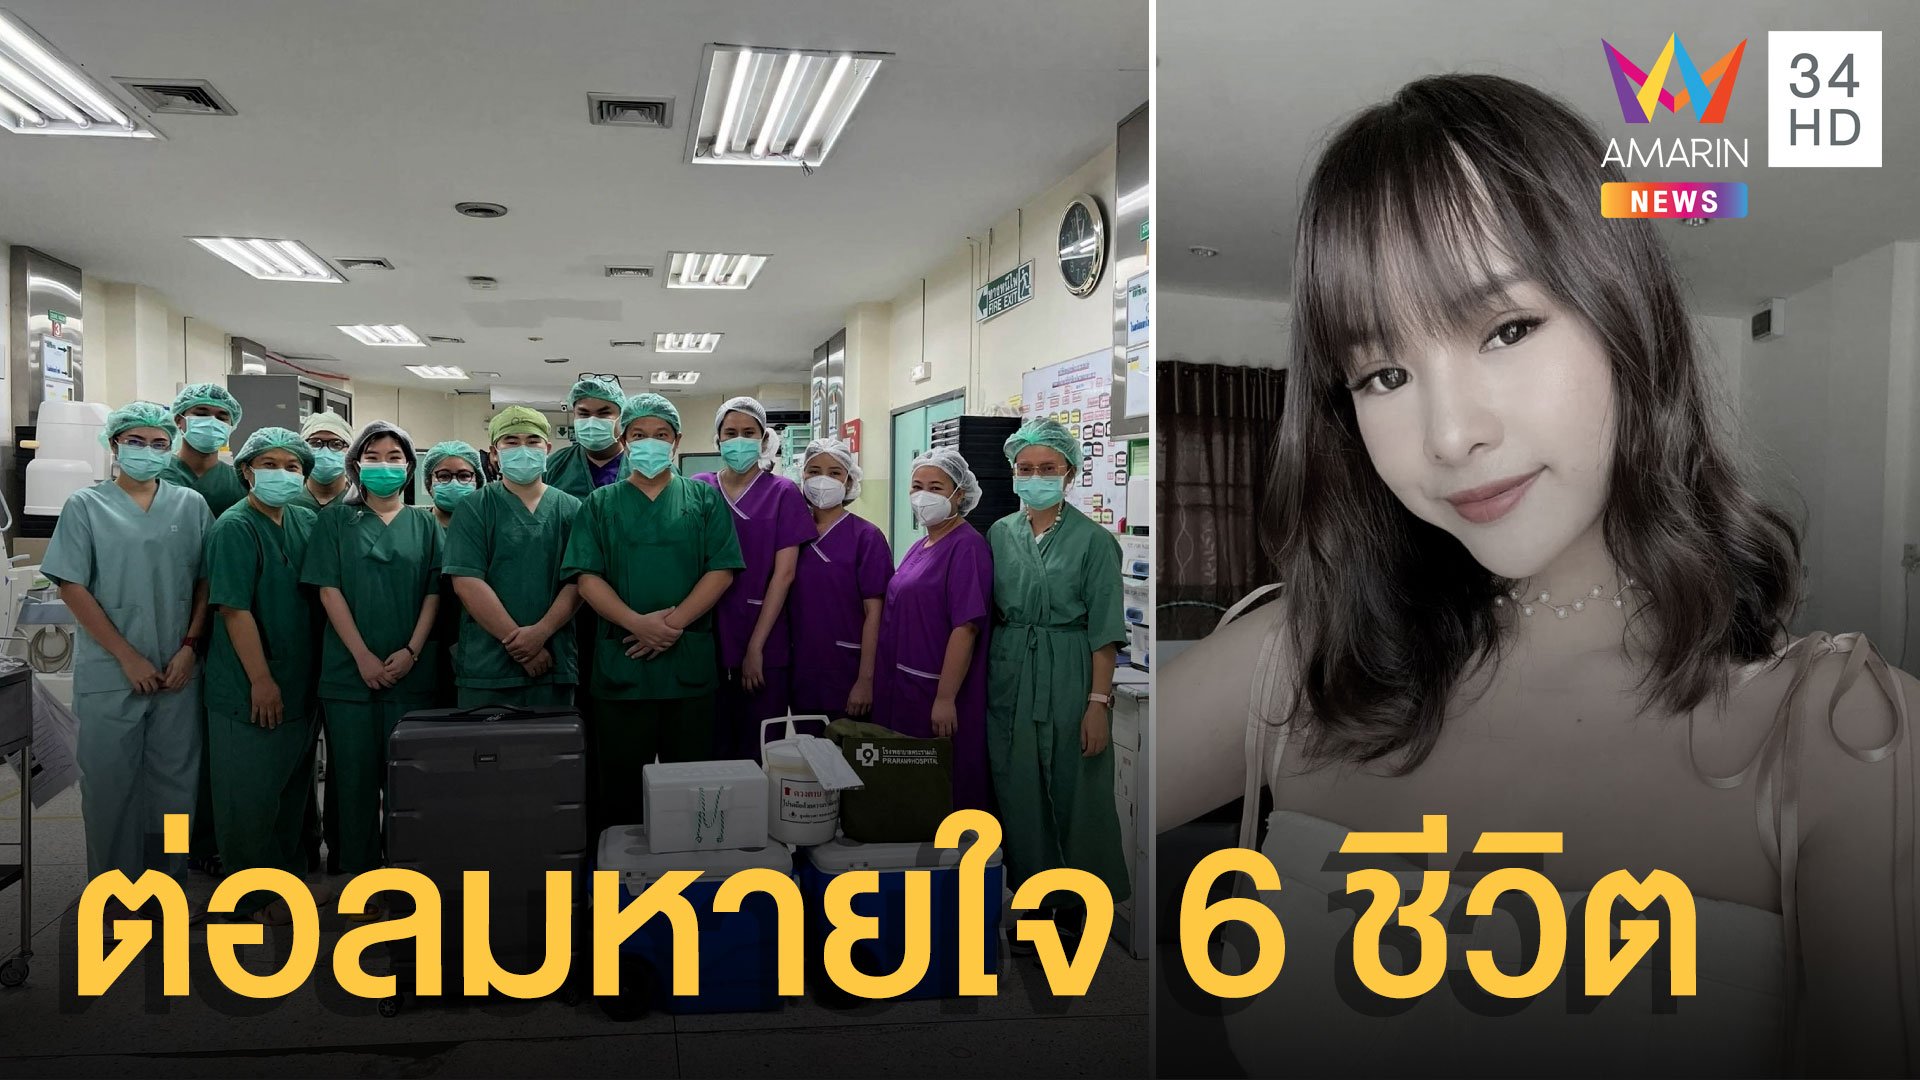 กุศลใหญ่ สาวถูกรถชนดับ บริจาคอวัยวะต่อลมหายใจ 6 ชีวิต | ข่าวอรุณอมรินทร์ | 24 ม.ค. 65 | AMARIN TVHD34